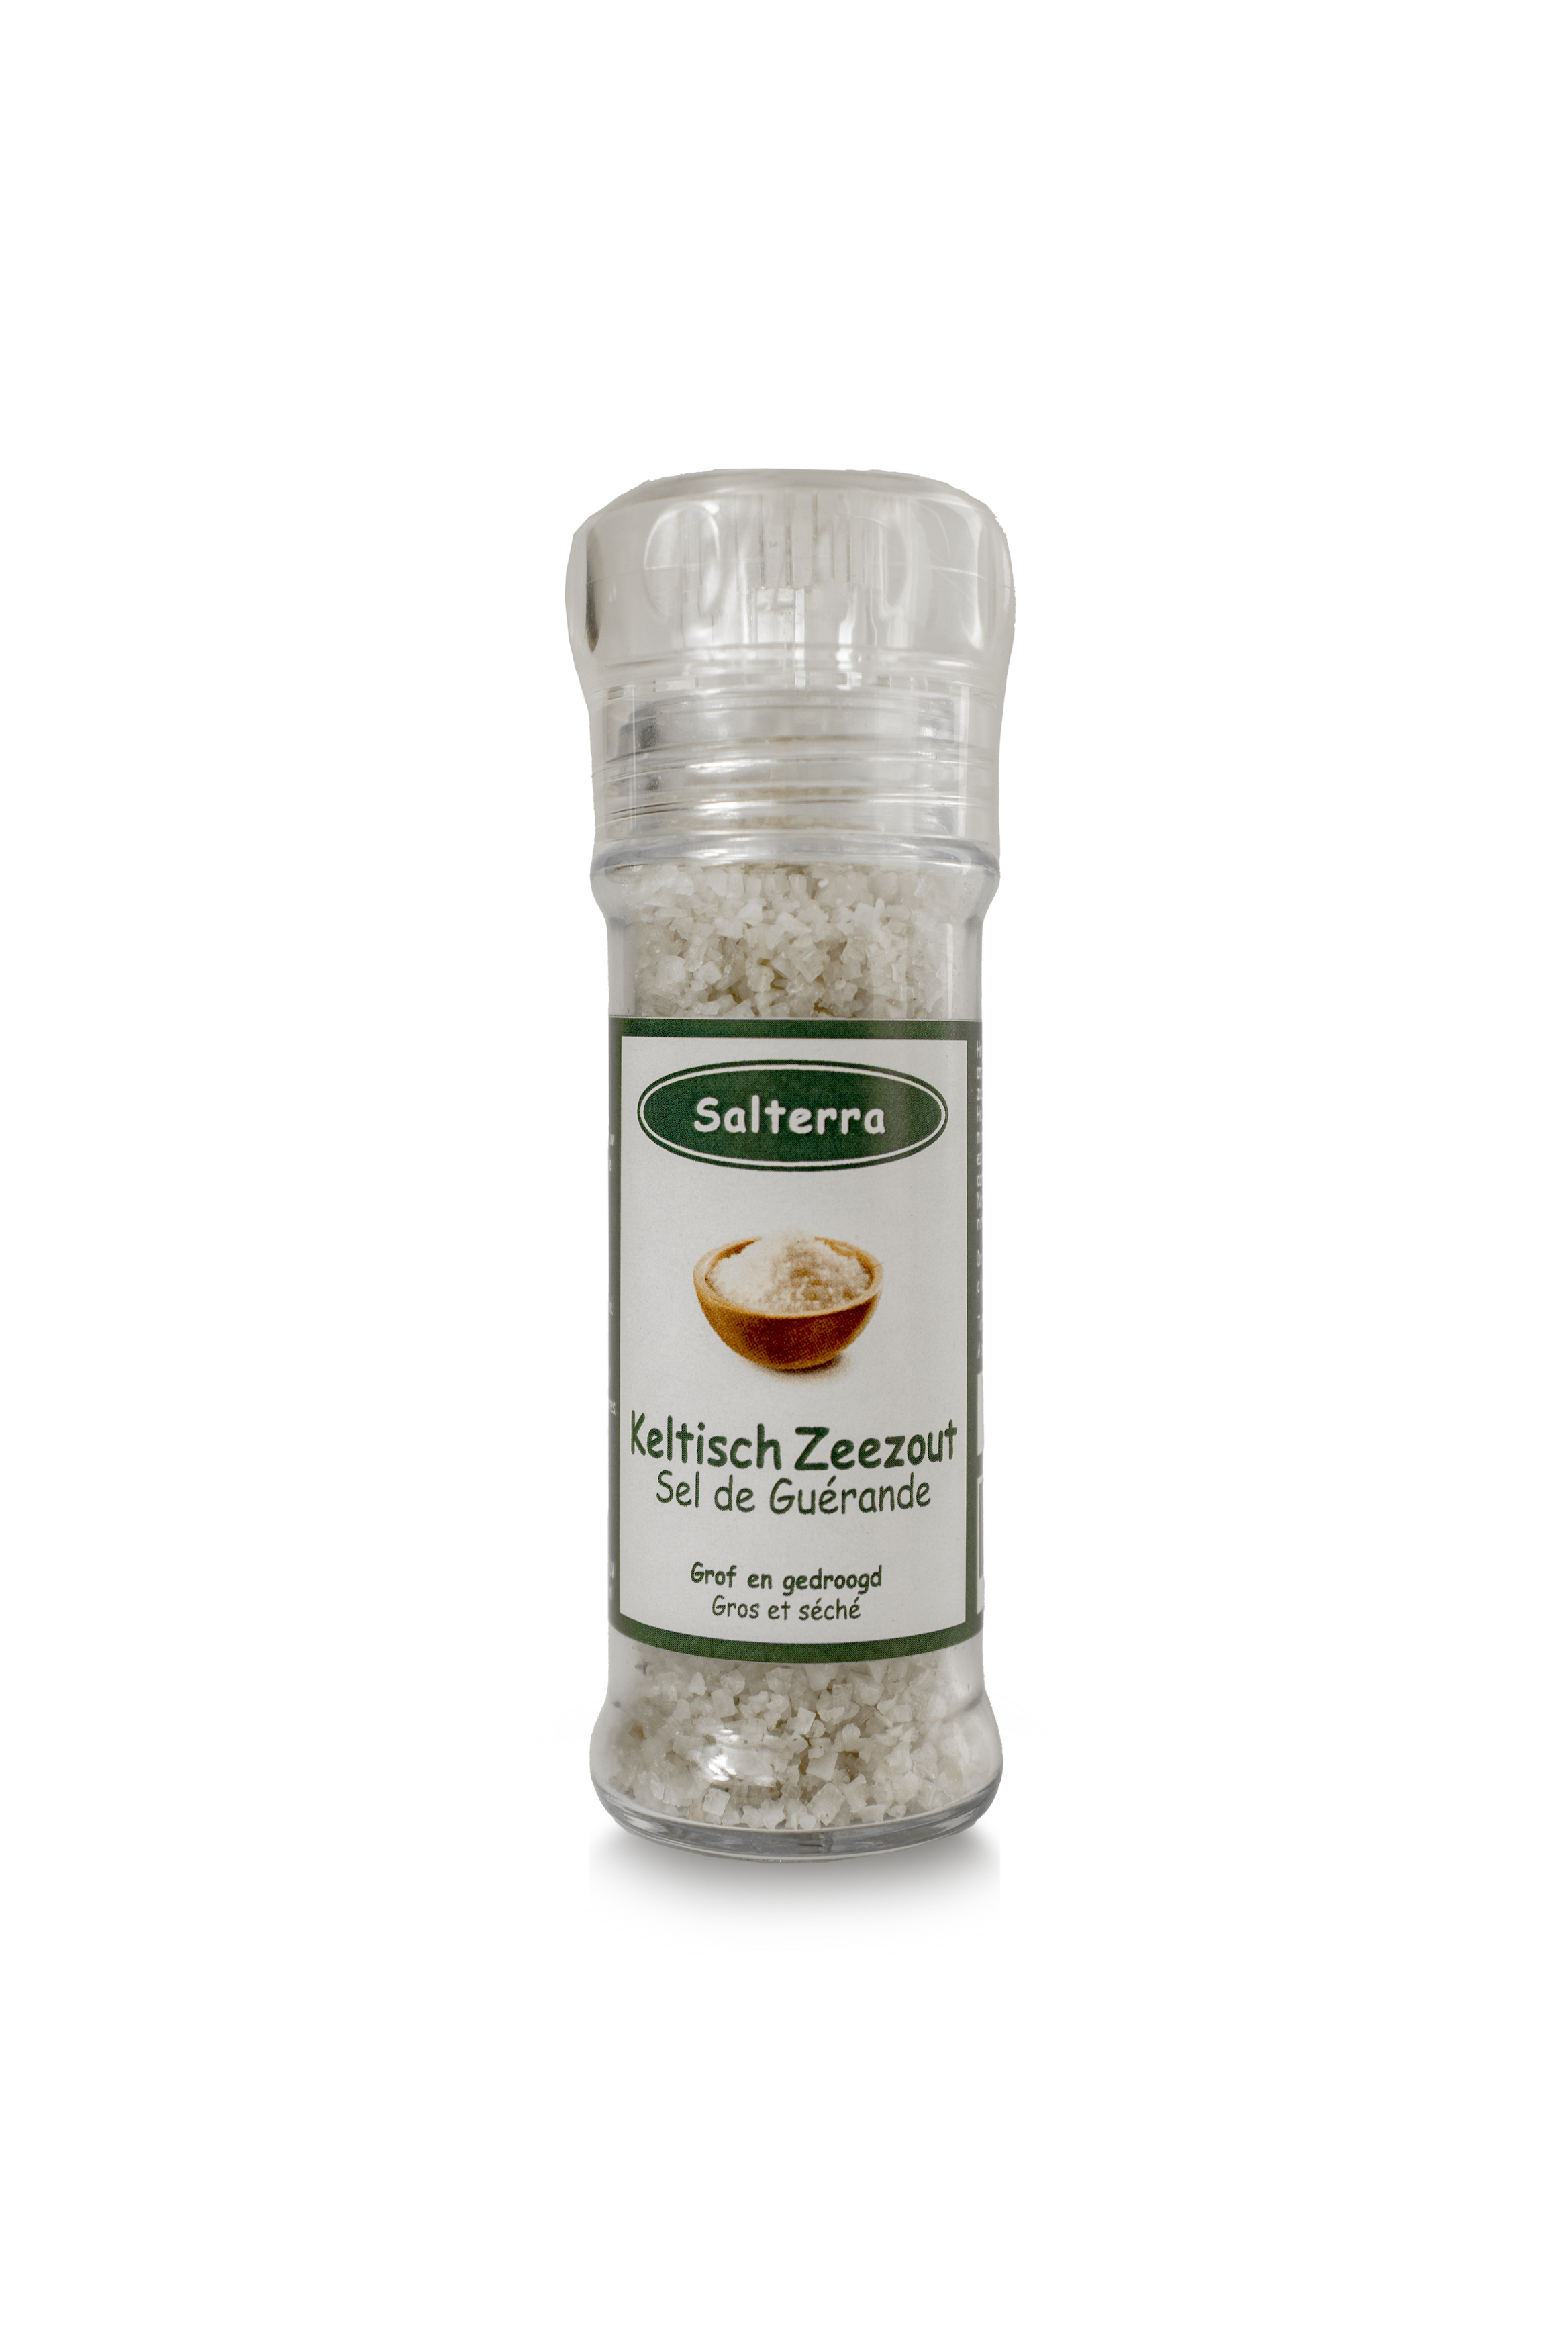 Celtic Sea Salt Sal de cueva de potasio rosa de 10.6 onzas (10.58 oz) –  Grano extrafino, natural, ligero en sodio – Para tarro agitador, salado,  10.6